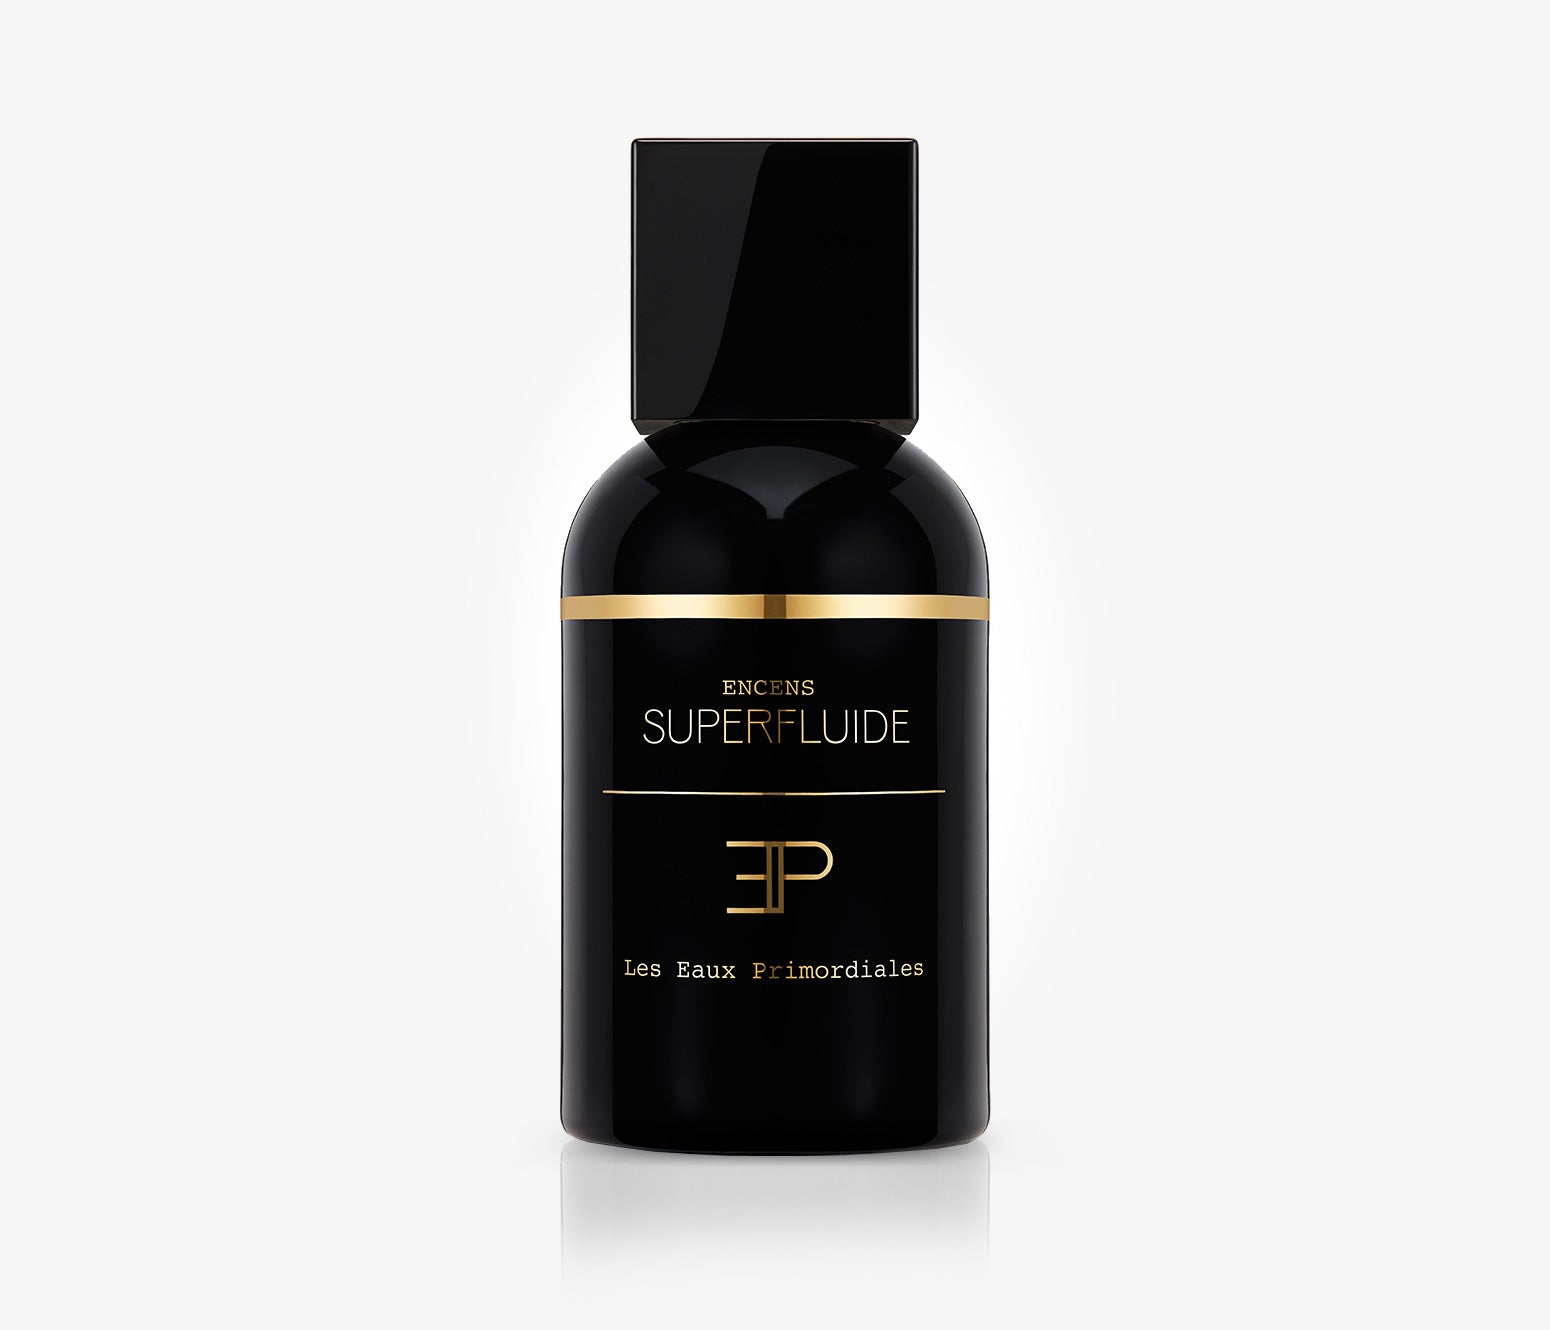 Les Eaux Primordiales - Superfluide Encens - 100ml - OKF001 - product image - Fragrance - Les Senteurs